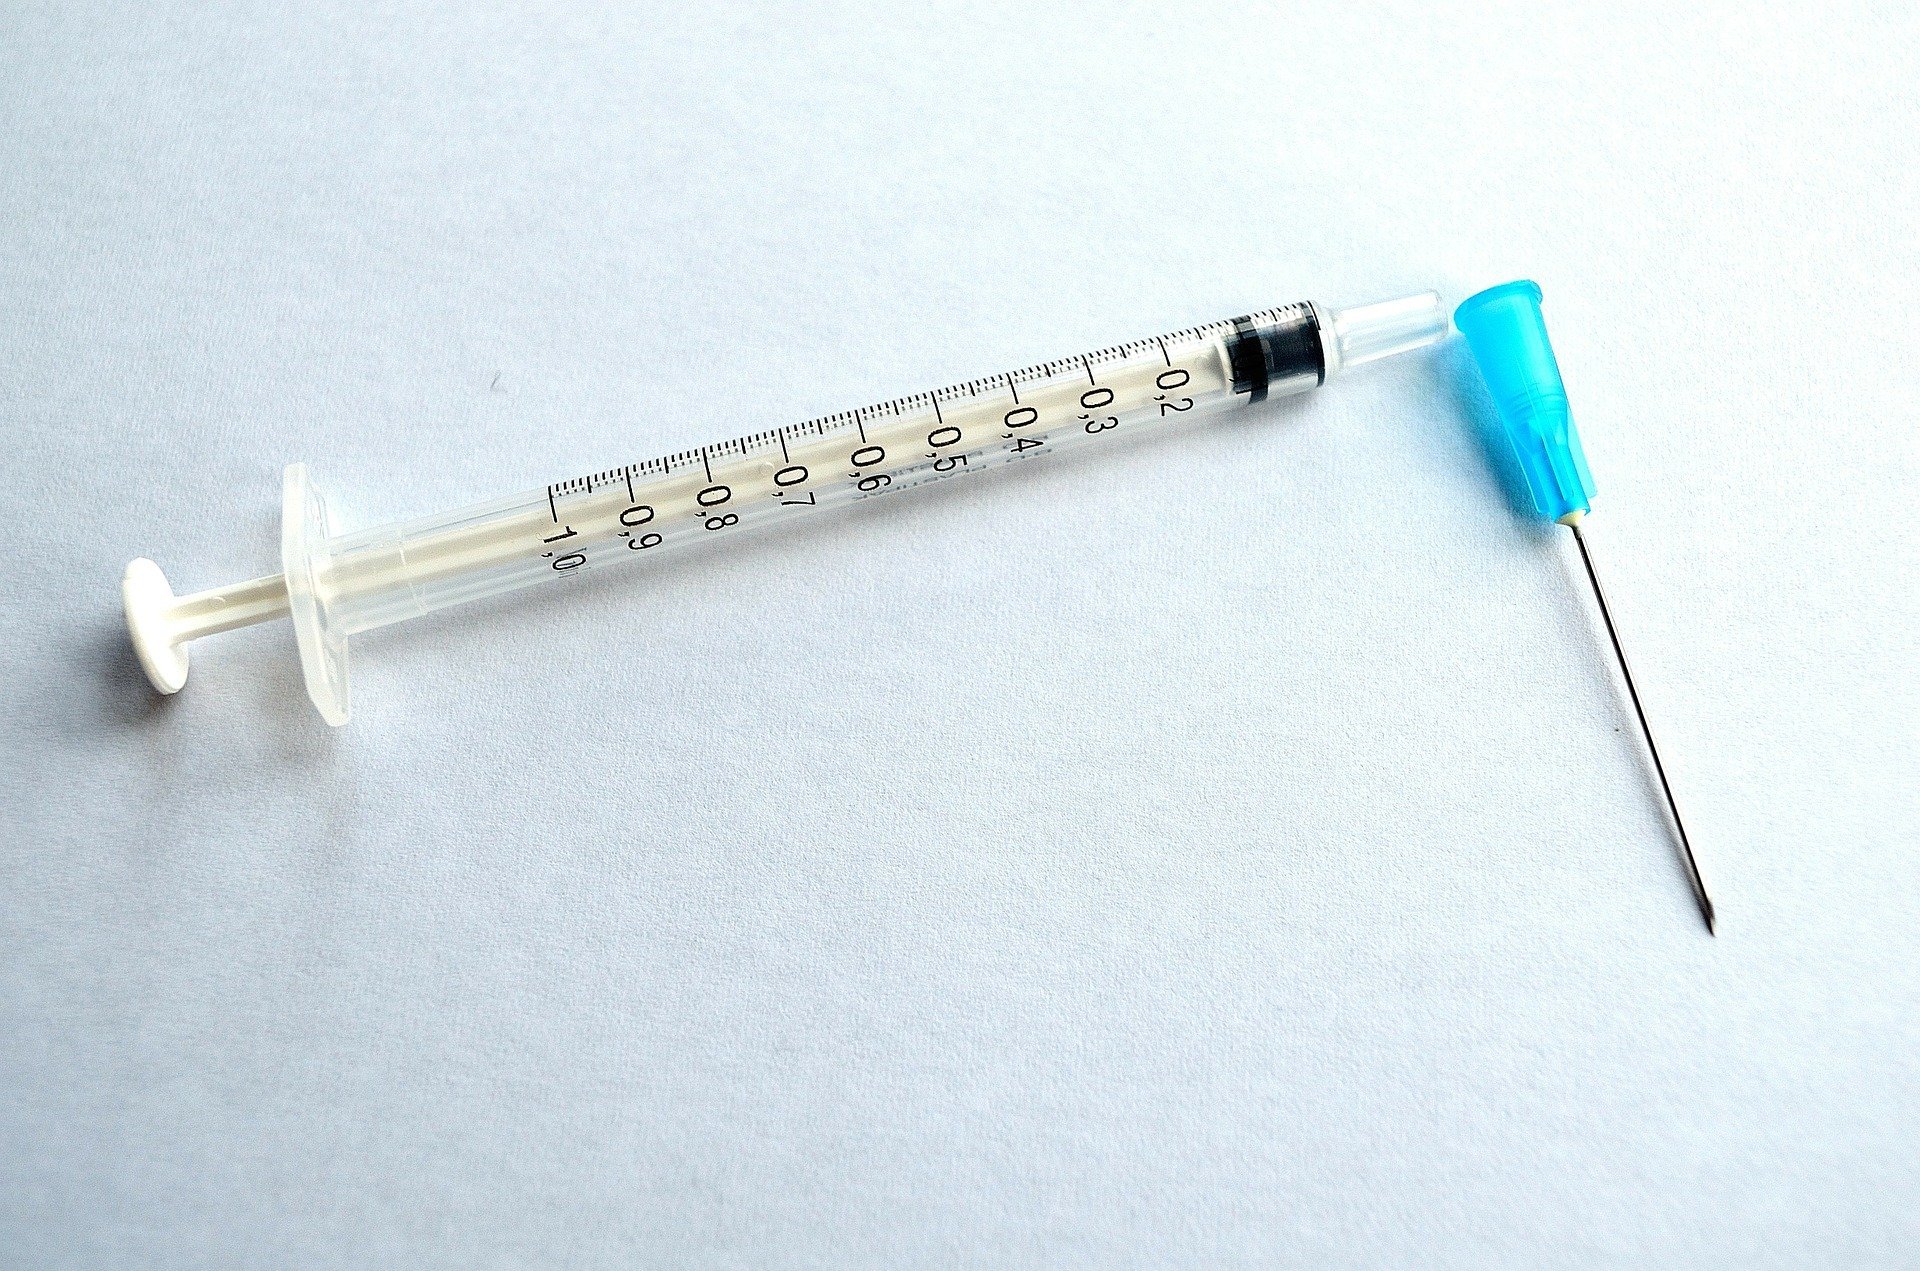 Cât va costa vaccinul anti-Covid?